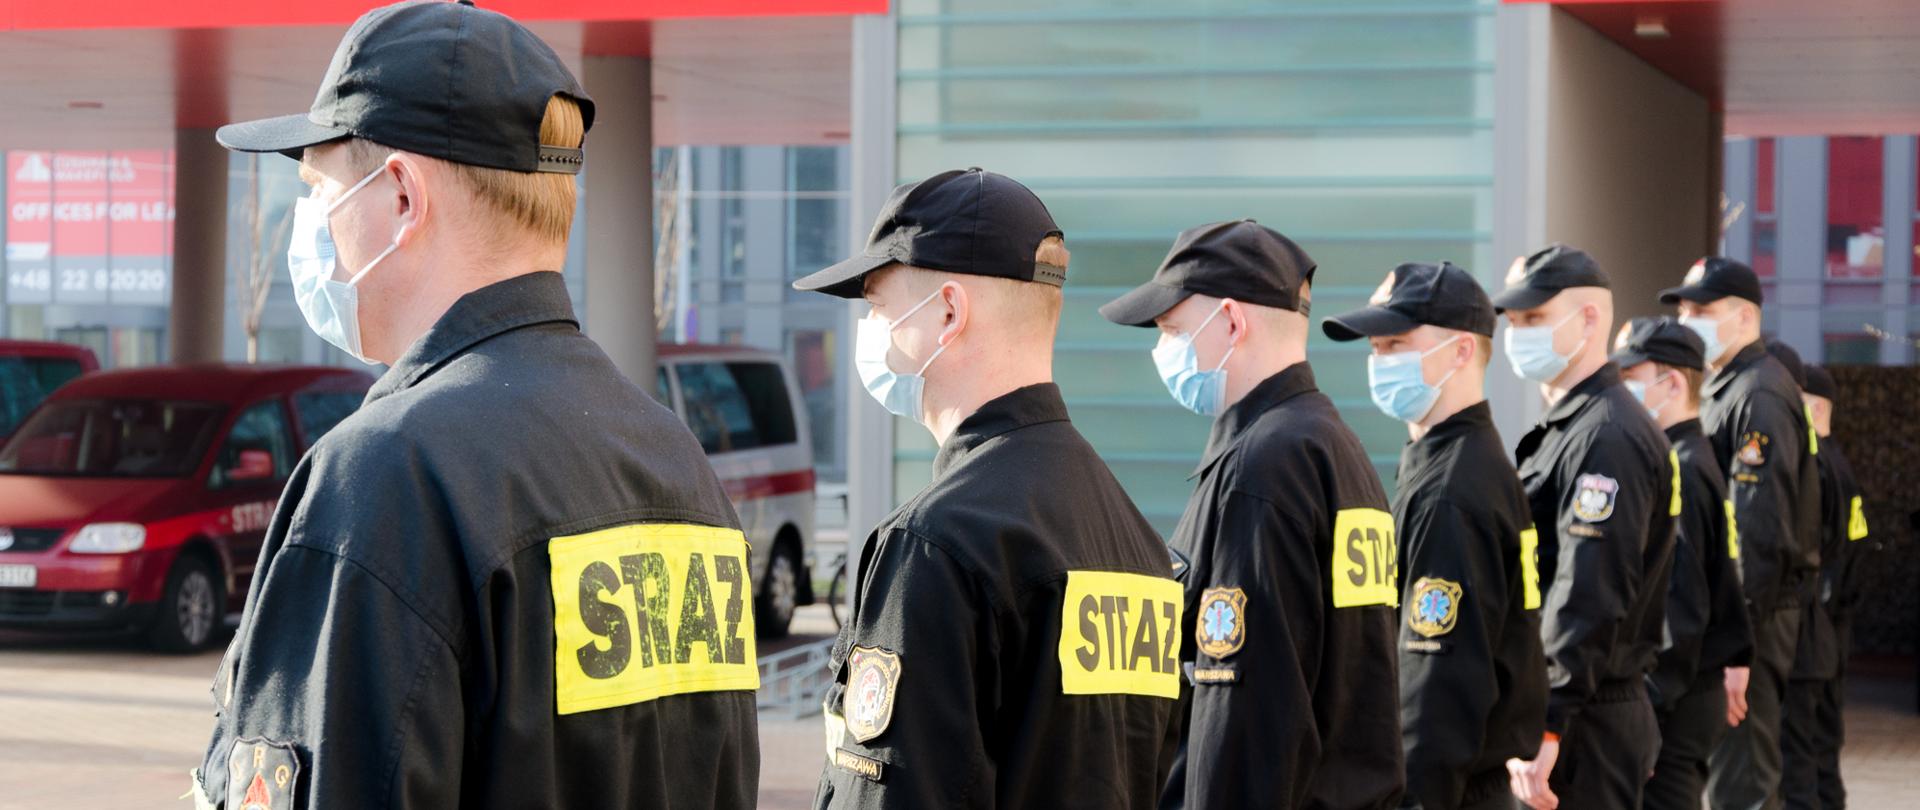 Na zdjęciu strażacy na oficjalnym spotkaniu w związku delegacją do Centralnego Szpitala Klinicznego MSWiA. Strażacy ubrani w mundury koszarowe koloru czarnego. 